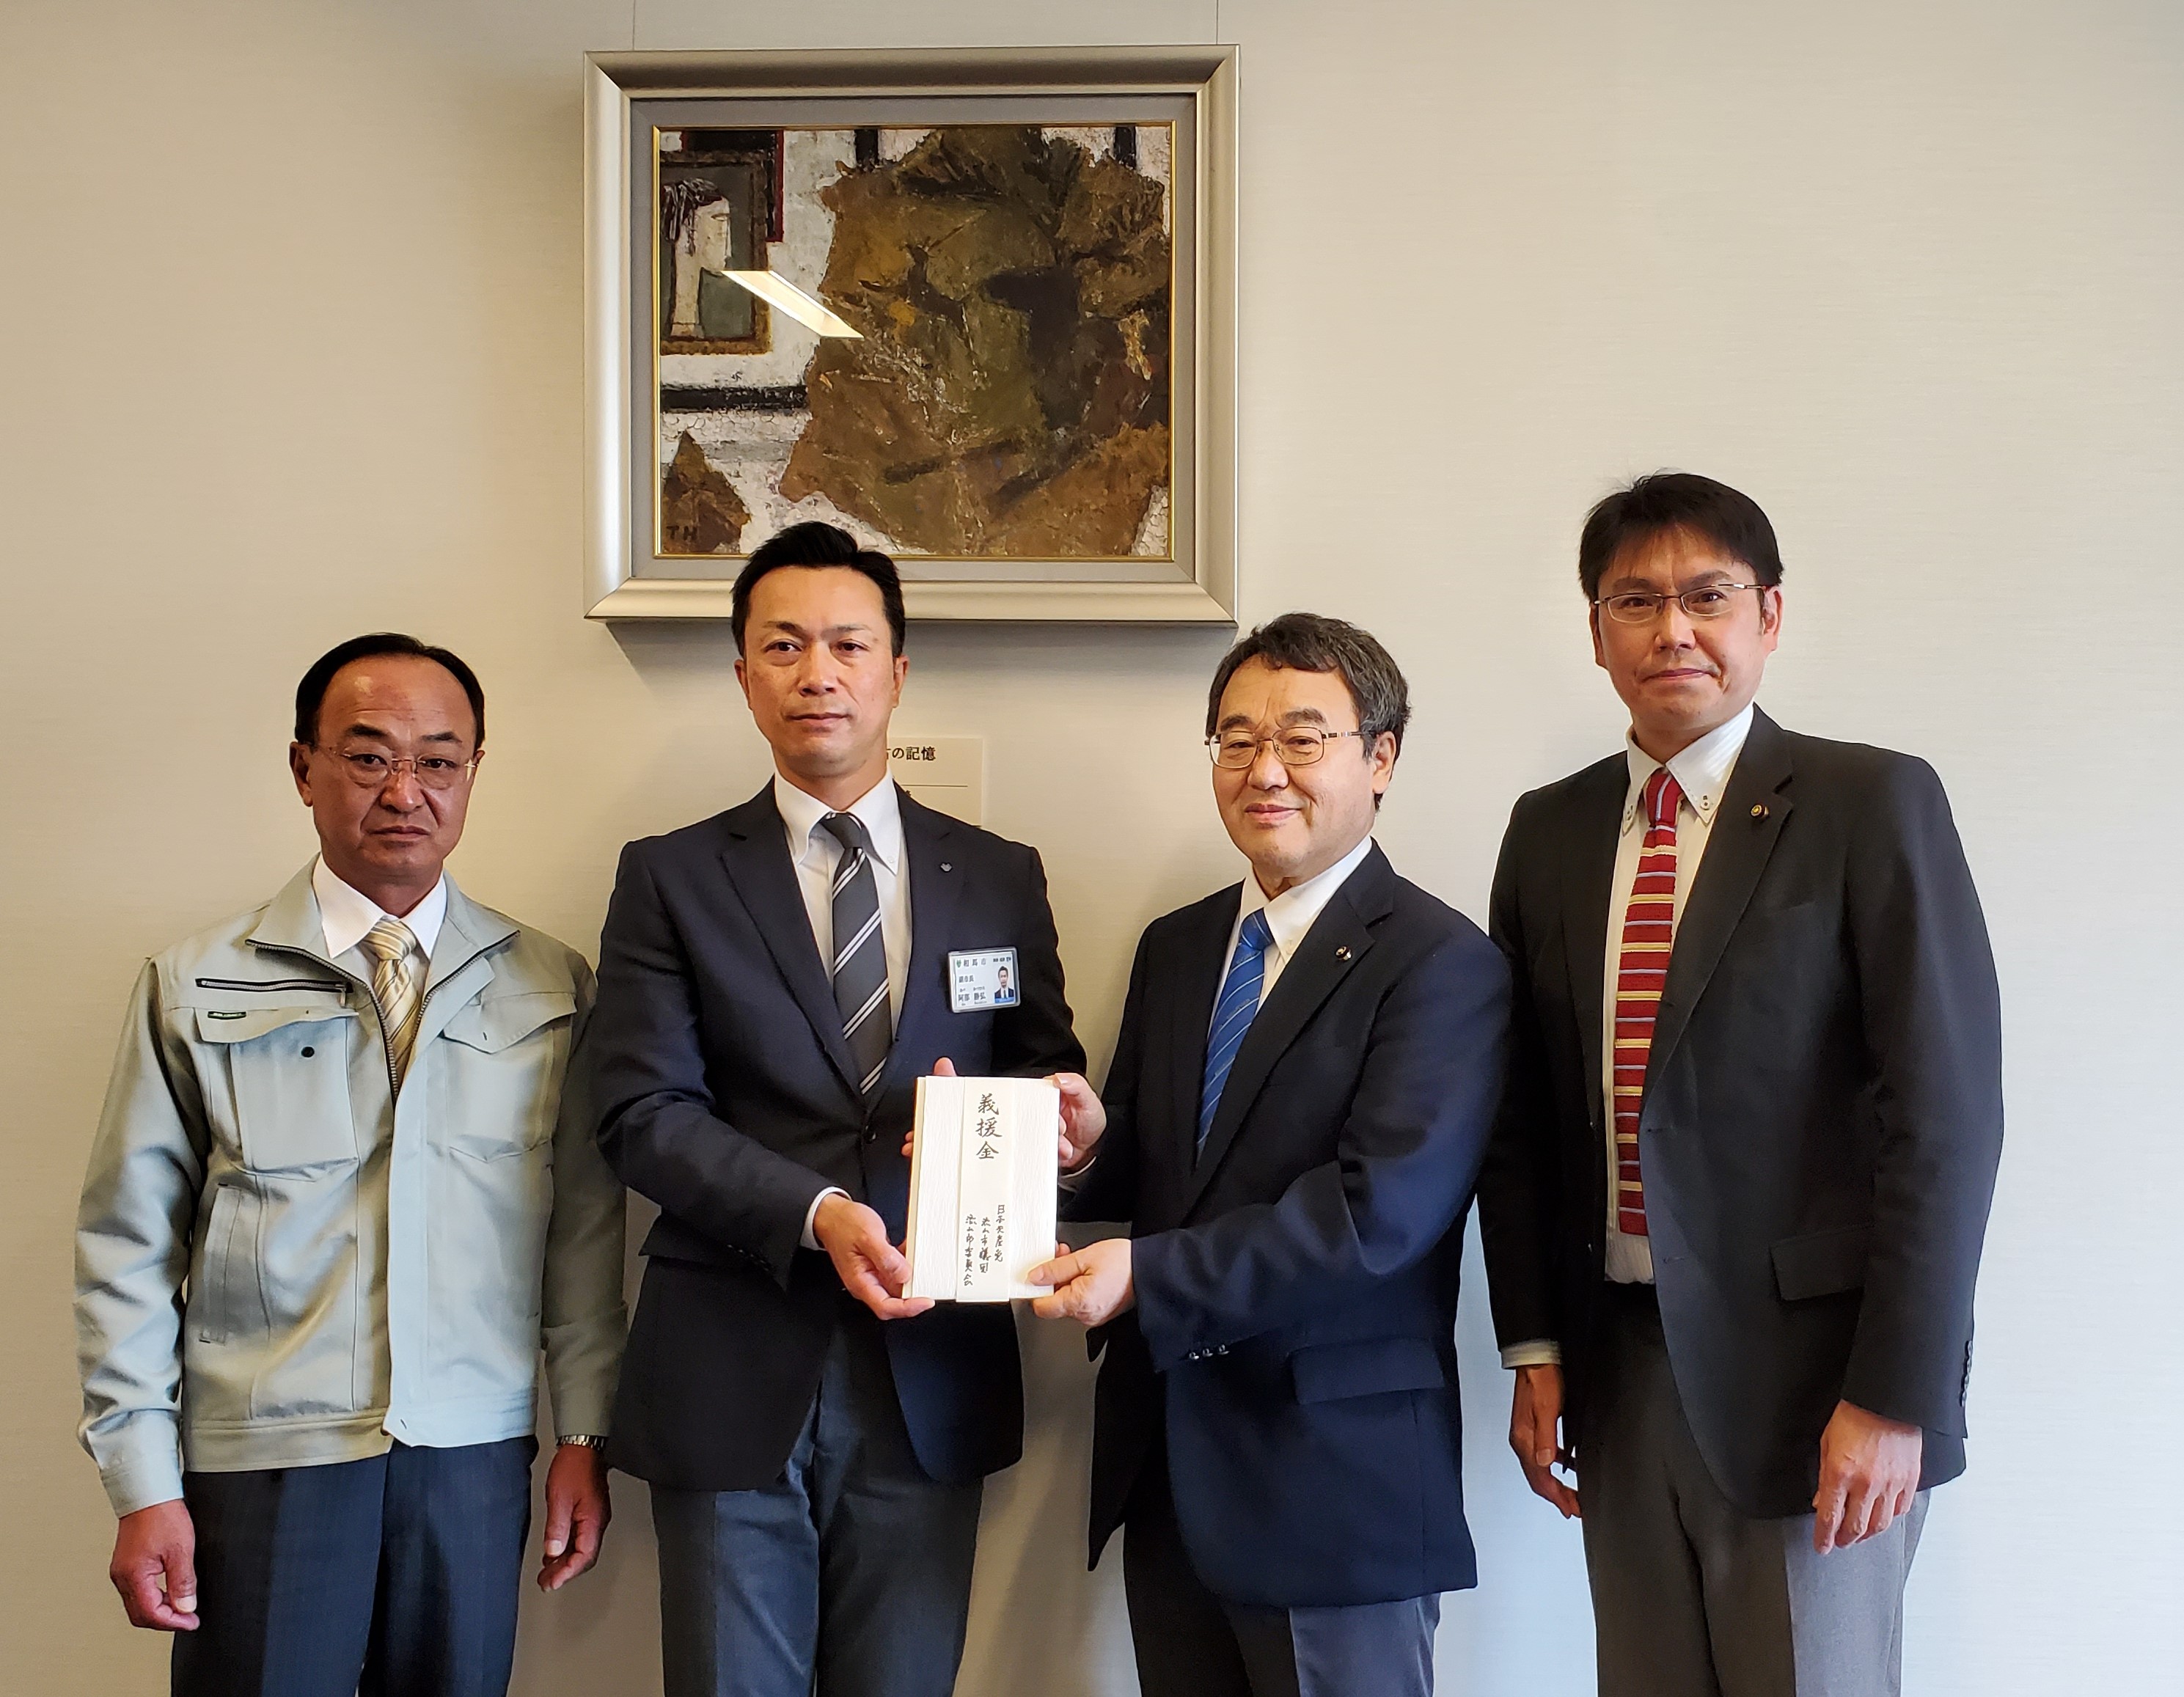 左から、石橋浩人議長　阿部勝弘副市長が義援金の対応をしていただきました。多忙のなか、ありがとうございました。